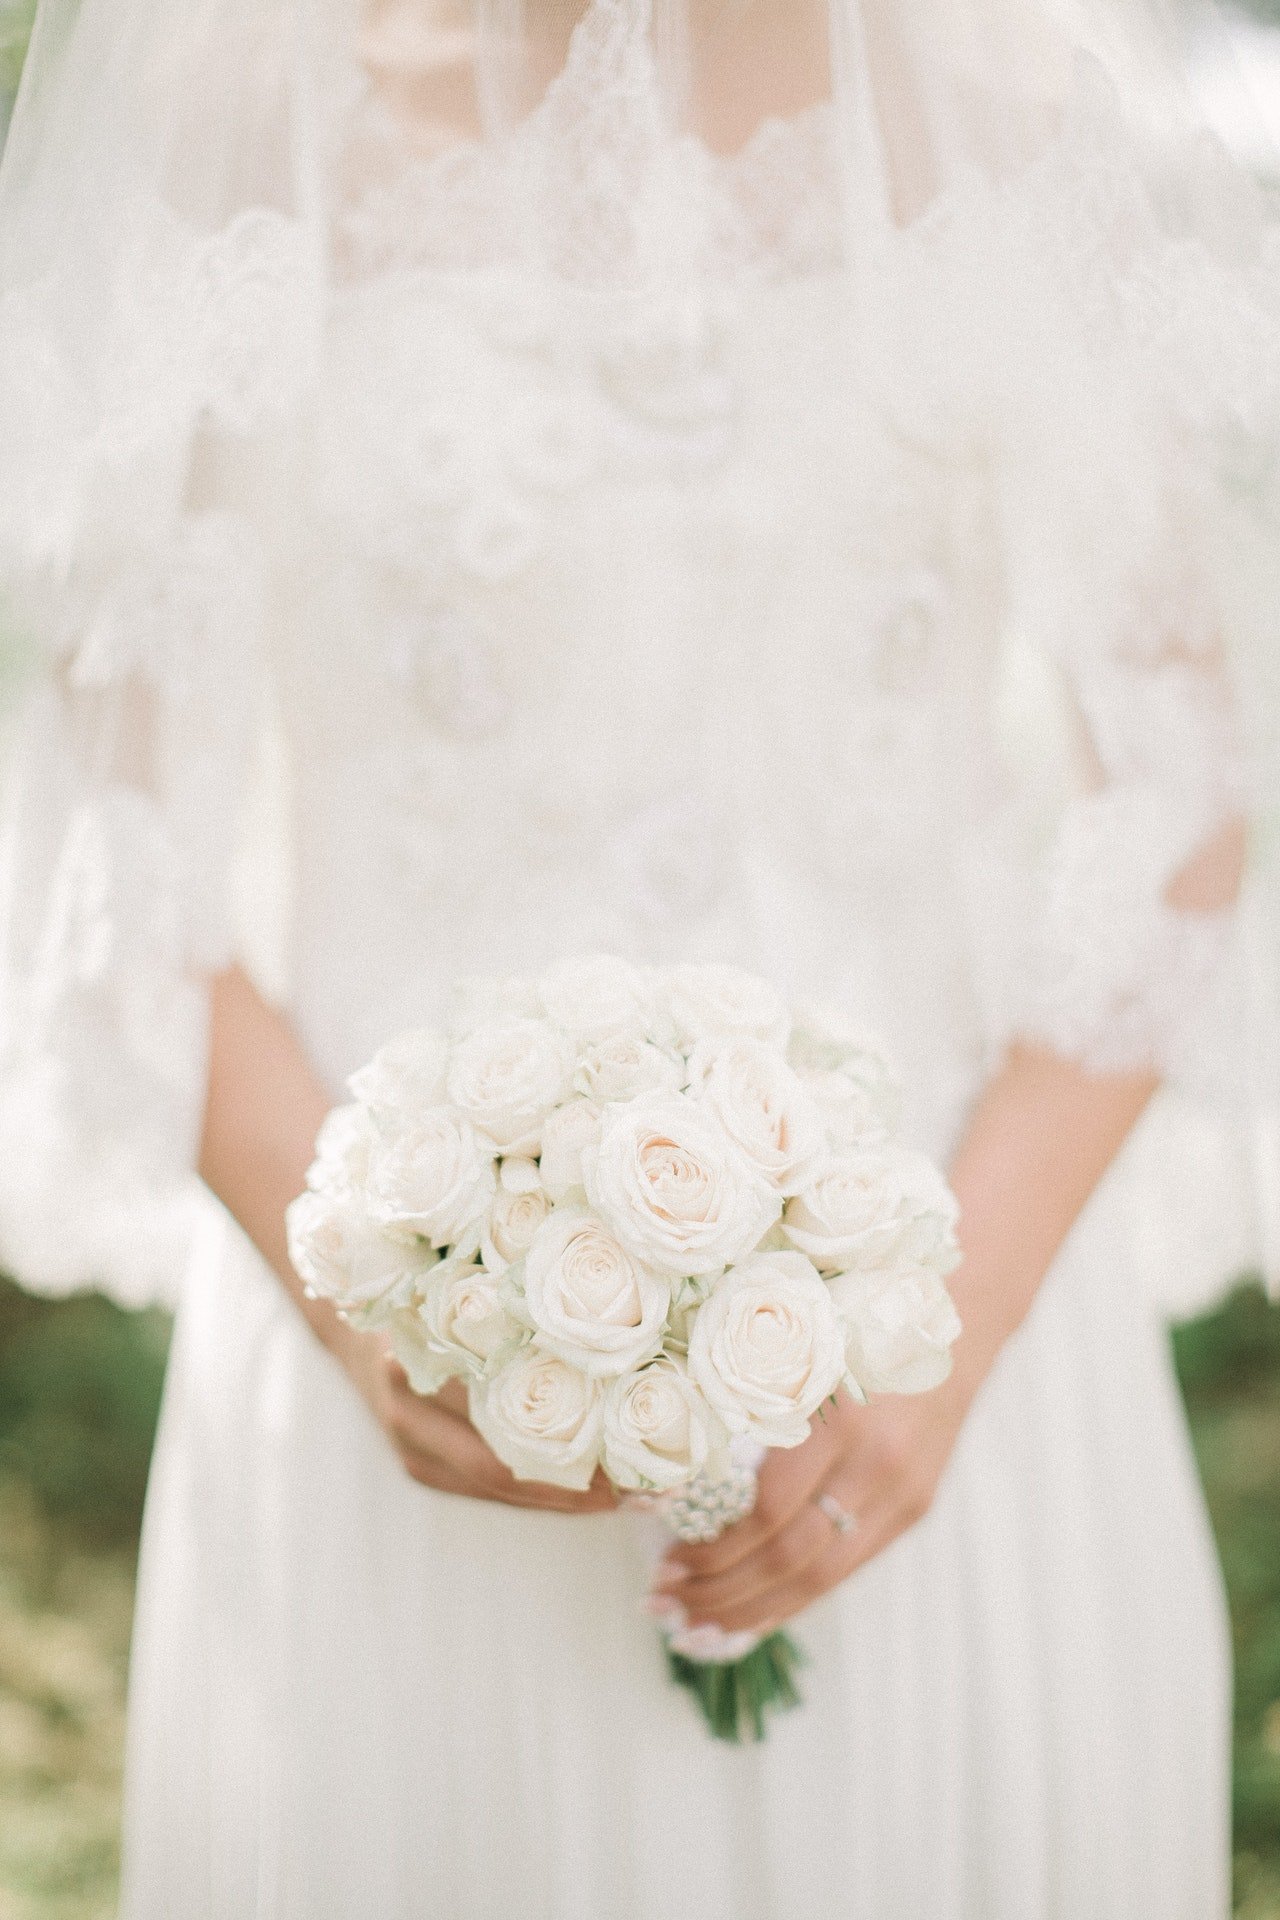 Vincent erkannte das Kleid der Braut. | Quelle: Pexels